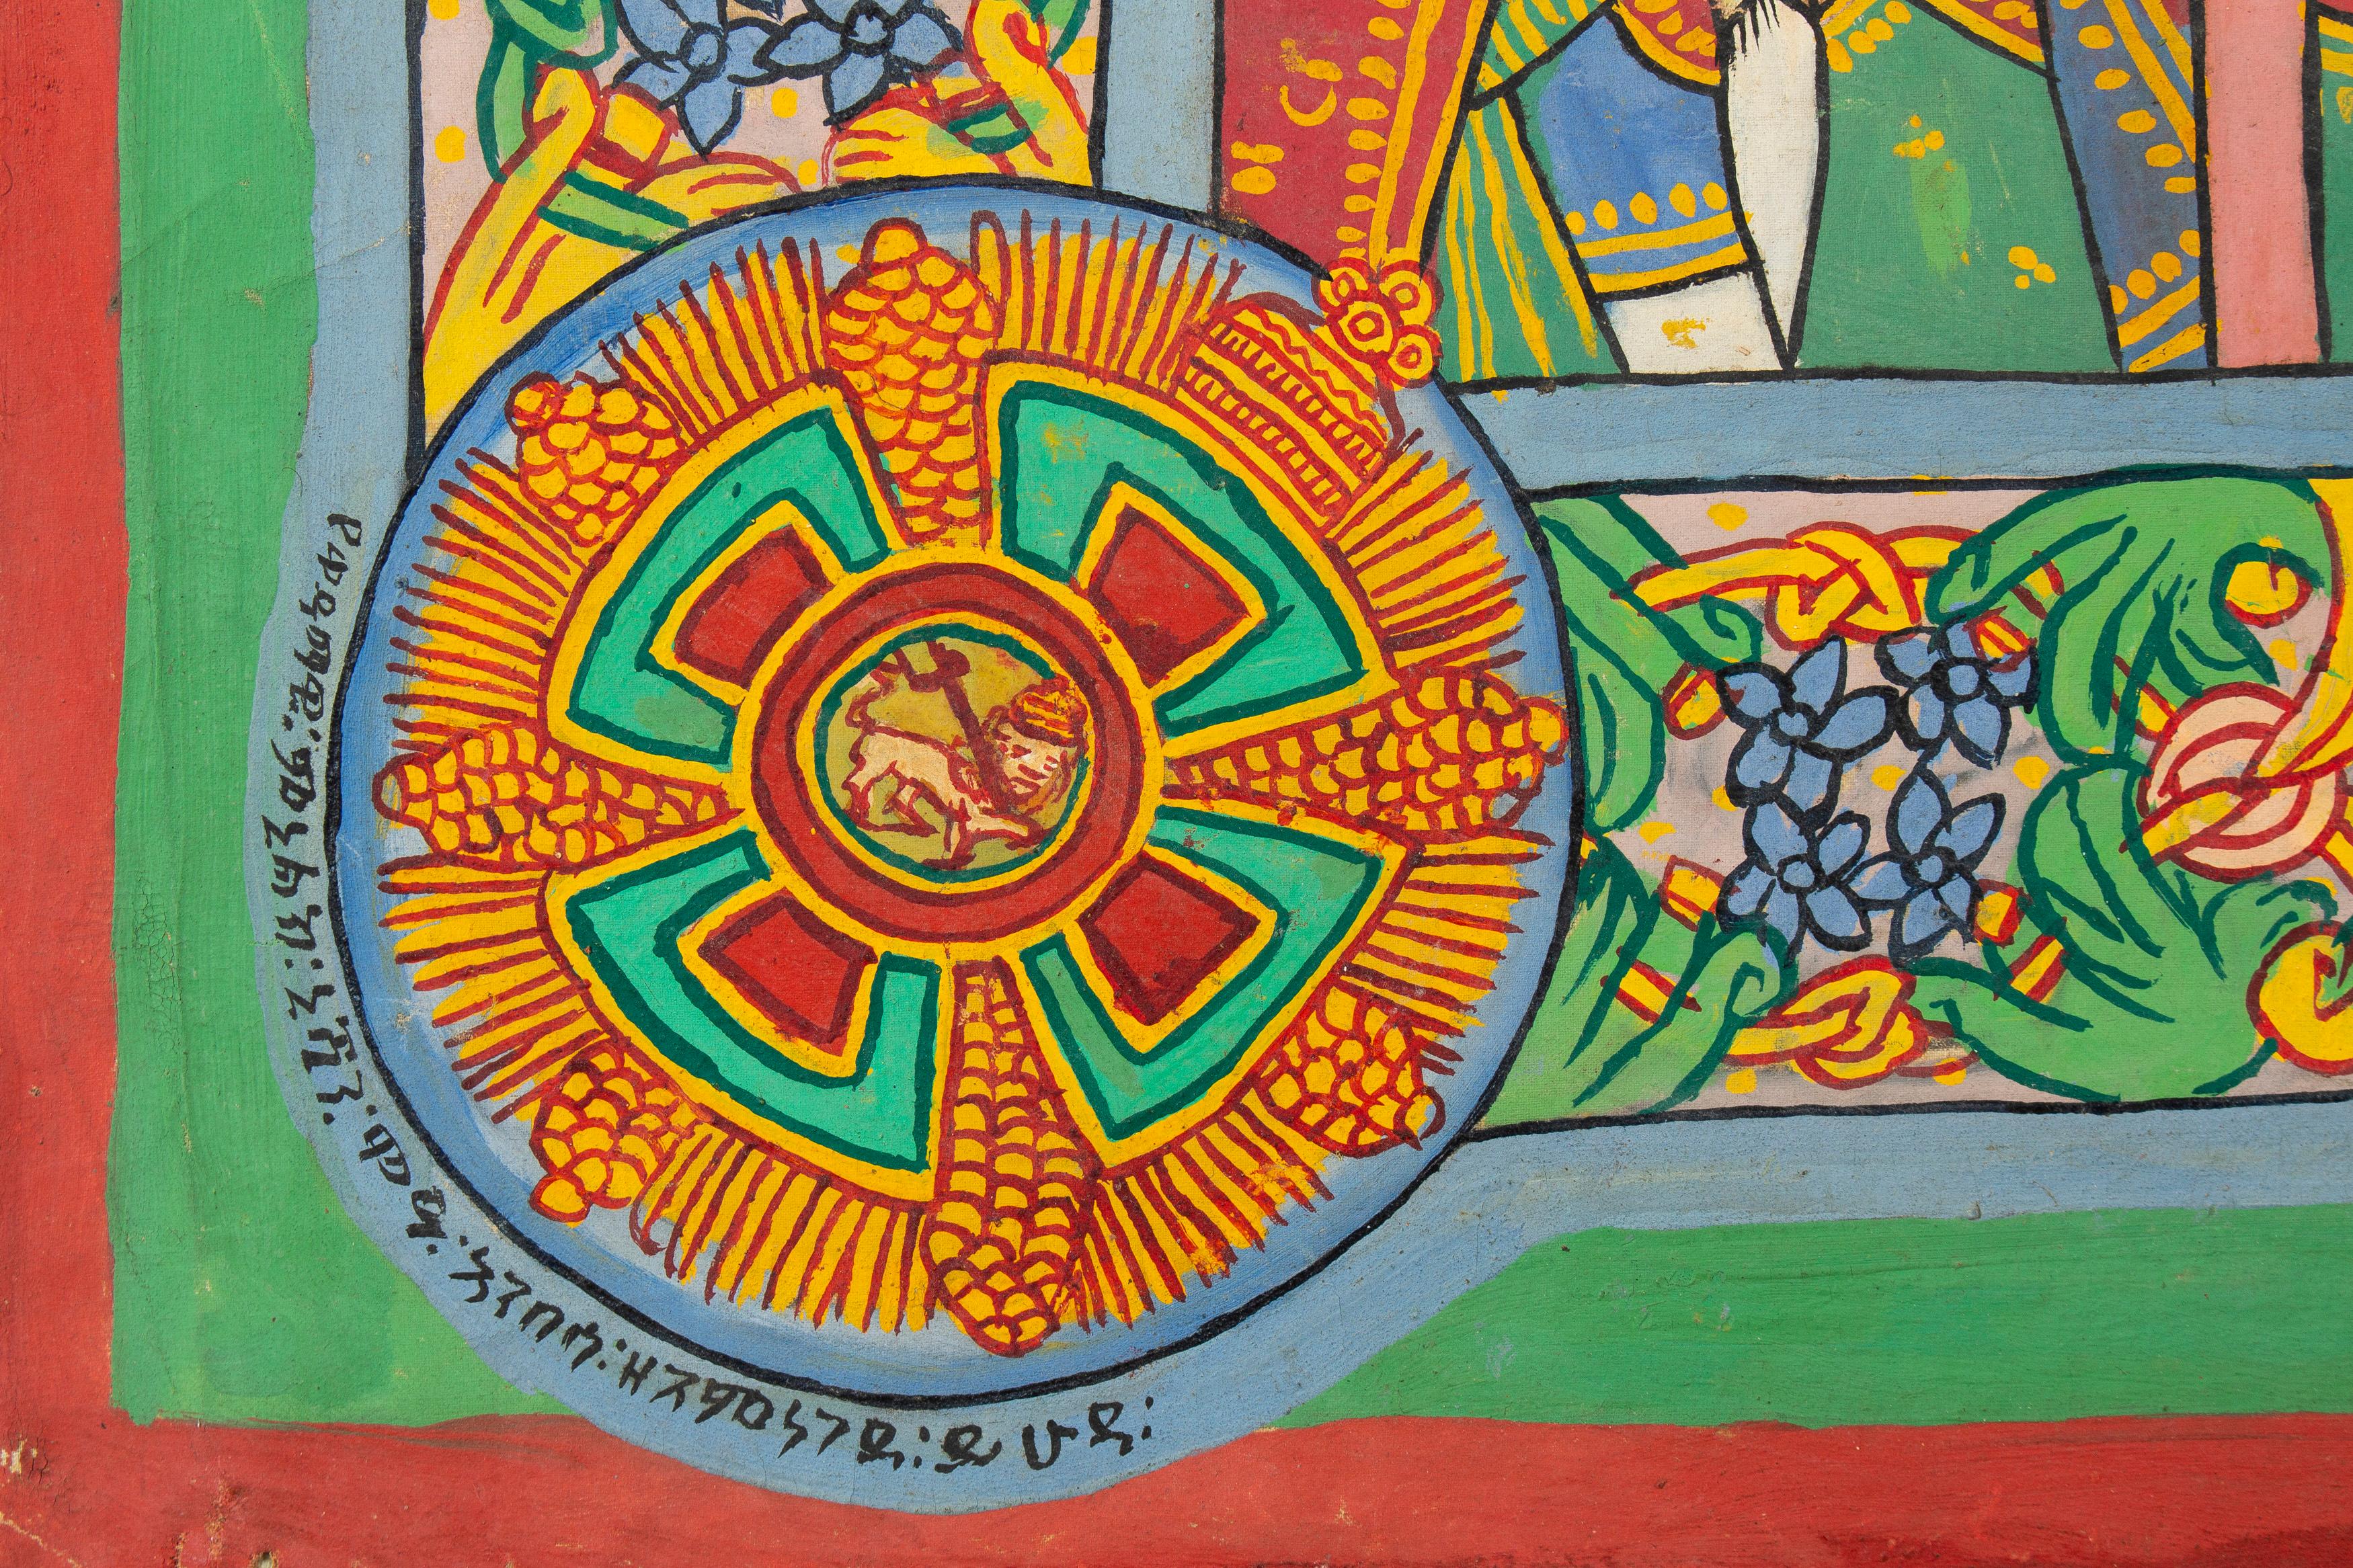 Peinture éthiopienne naïve, Les plus grandes scènes de la religion, de la société et de l'histoire.
Huile sur toile
Mesures : 100 x 190 cm
s.b.r.
avec des inscriptions en langue ge'ez.